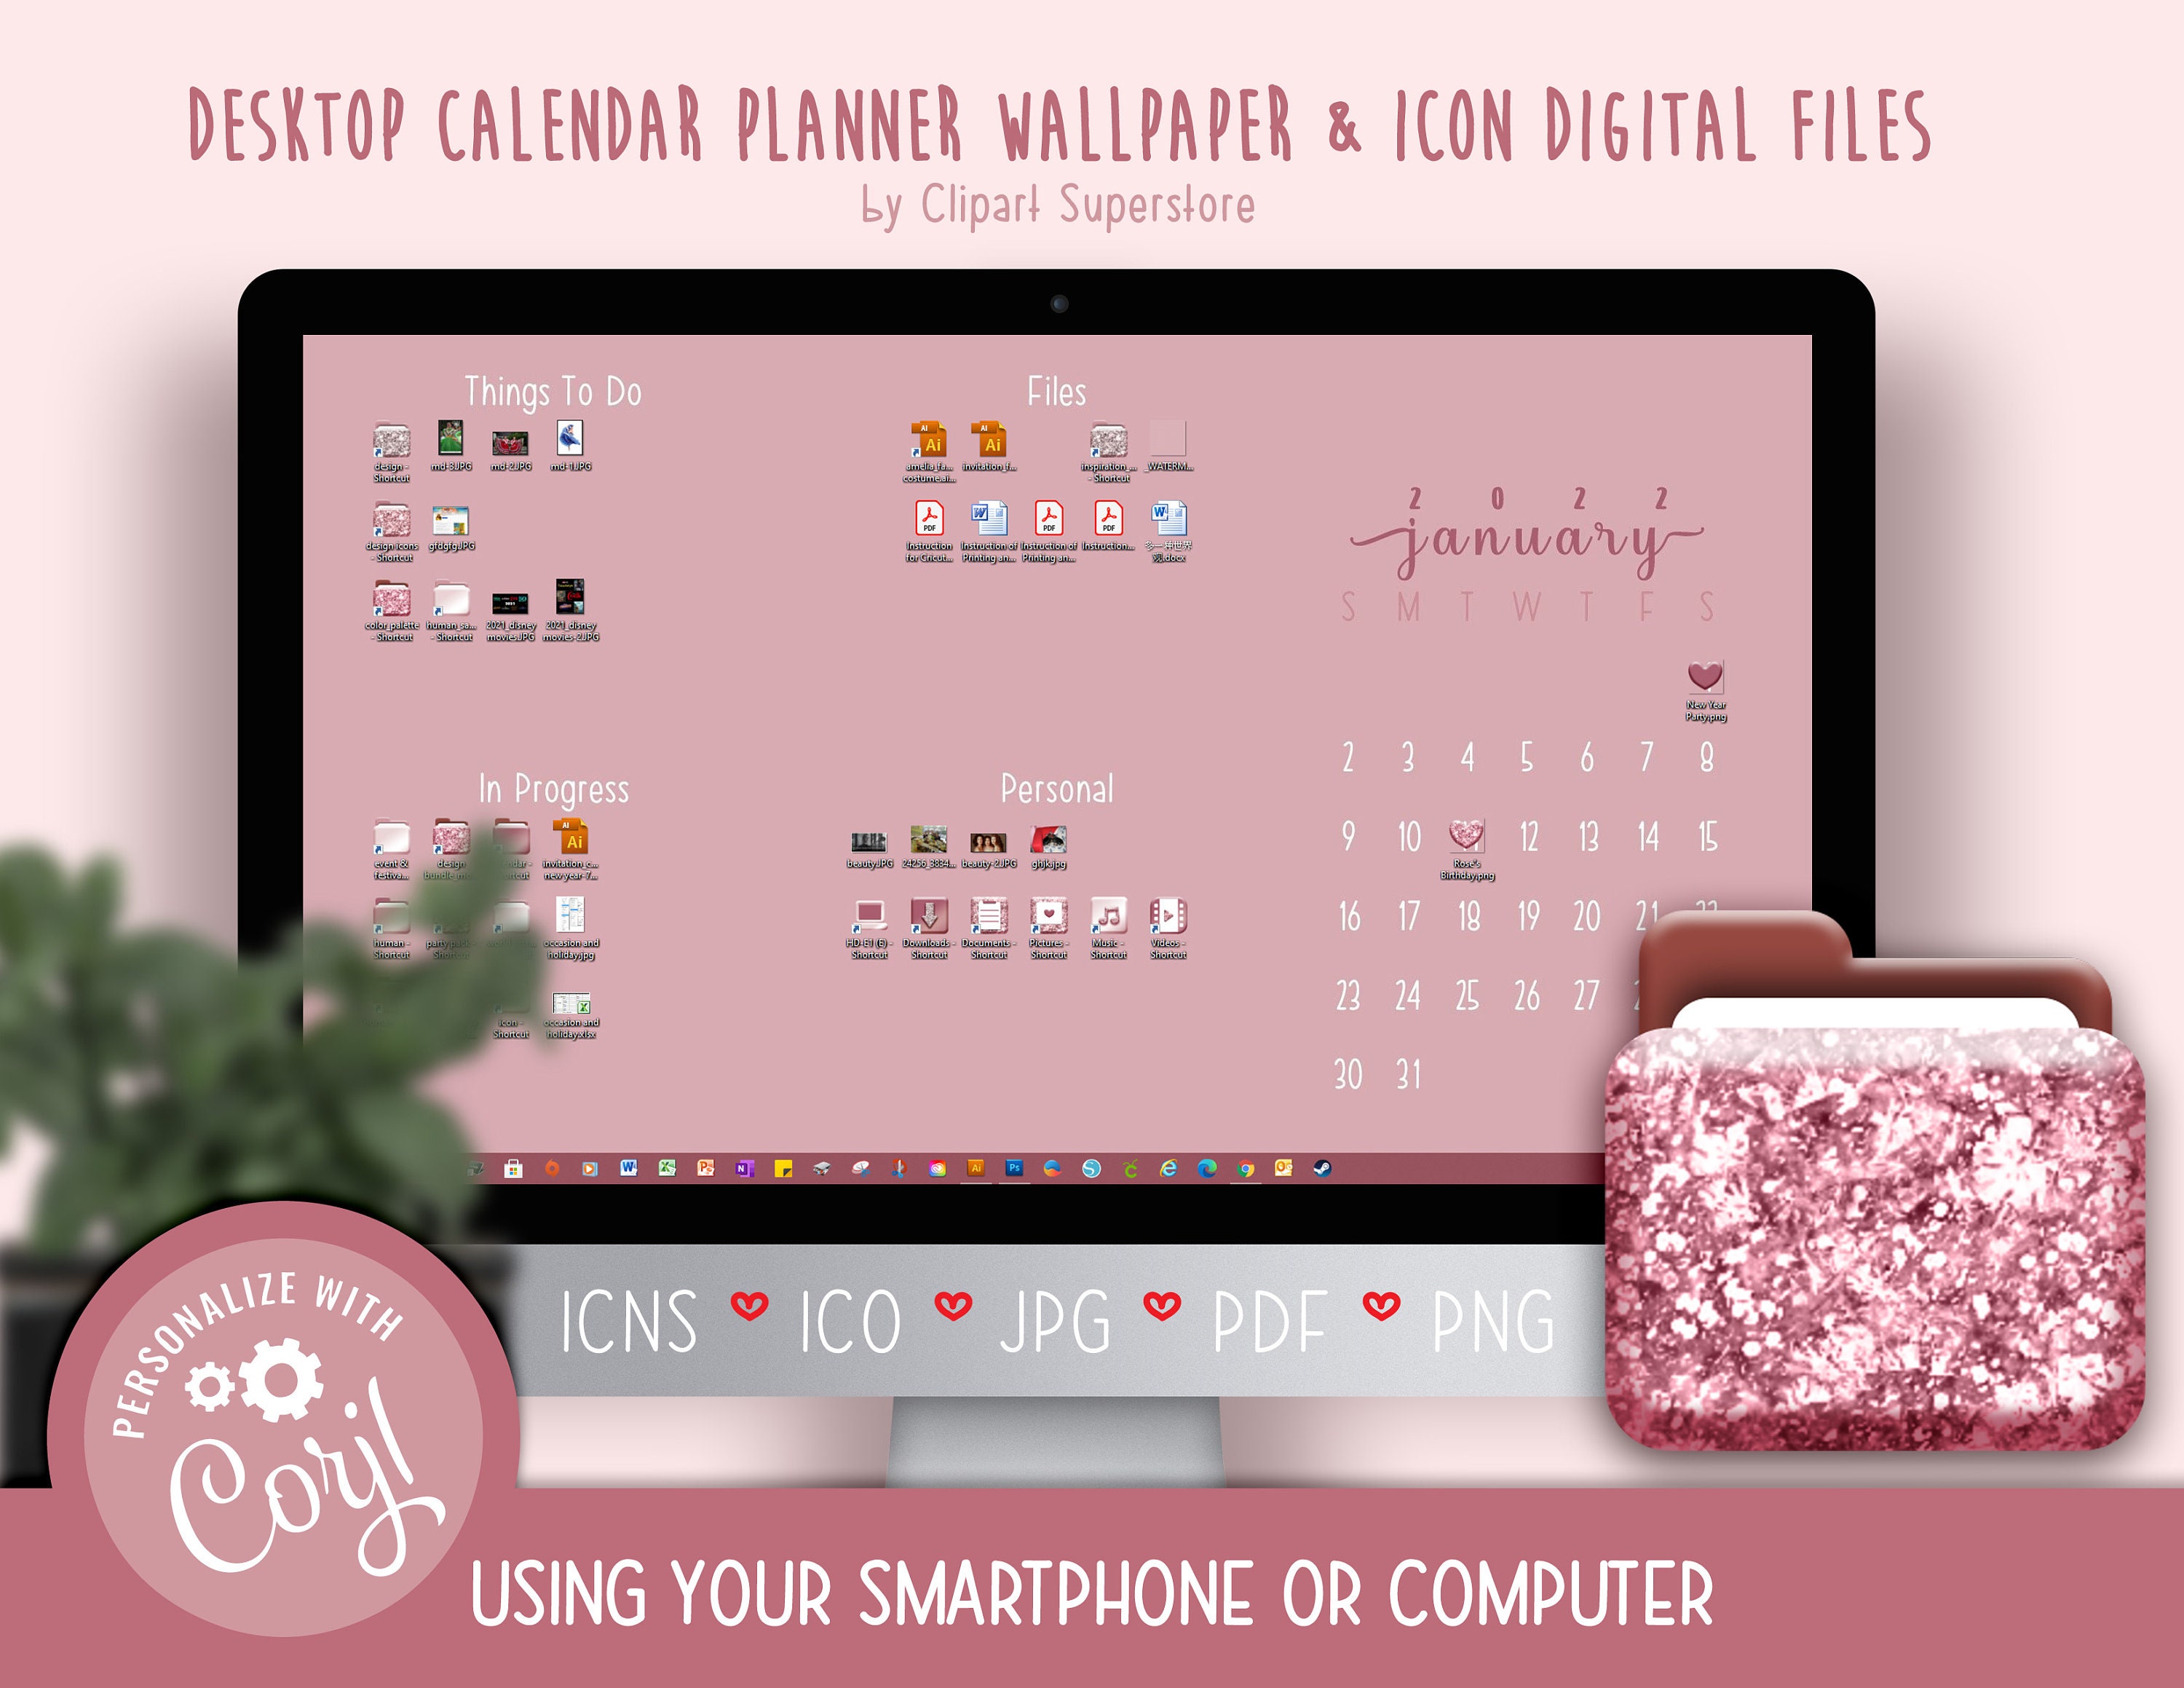 Desktop Calendar Wallpaper 2022 2021 2022 Desktop Calendar Wallpaper Organizer Planner And | Etsy Singapore